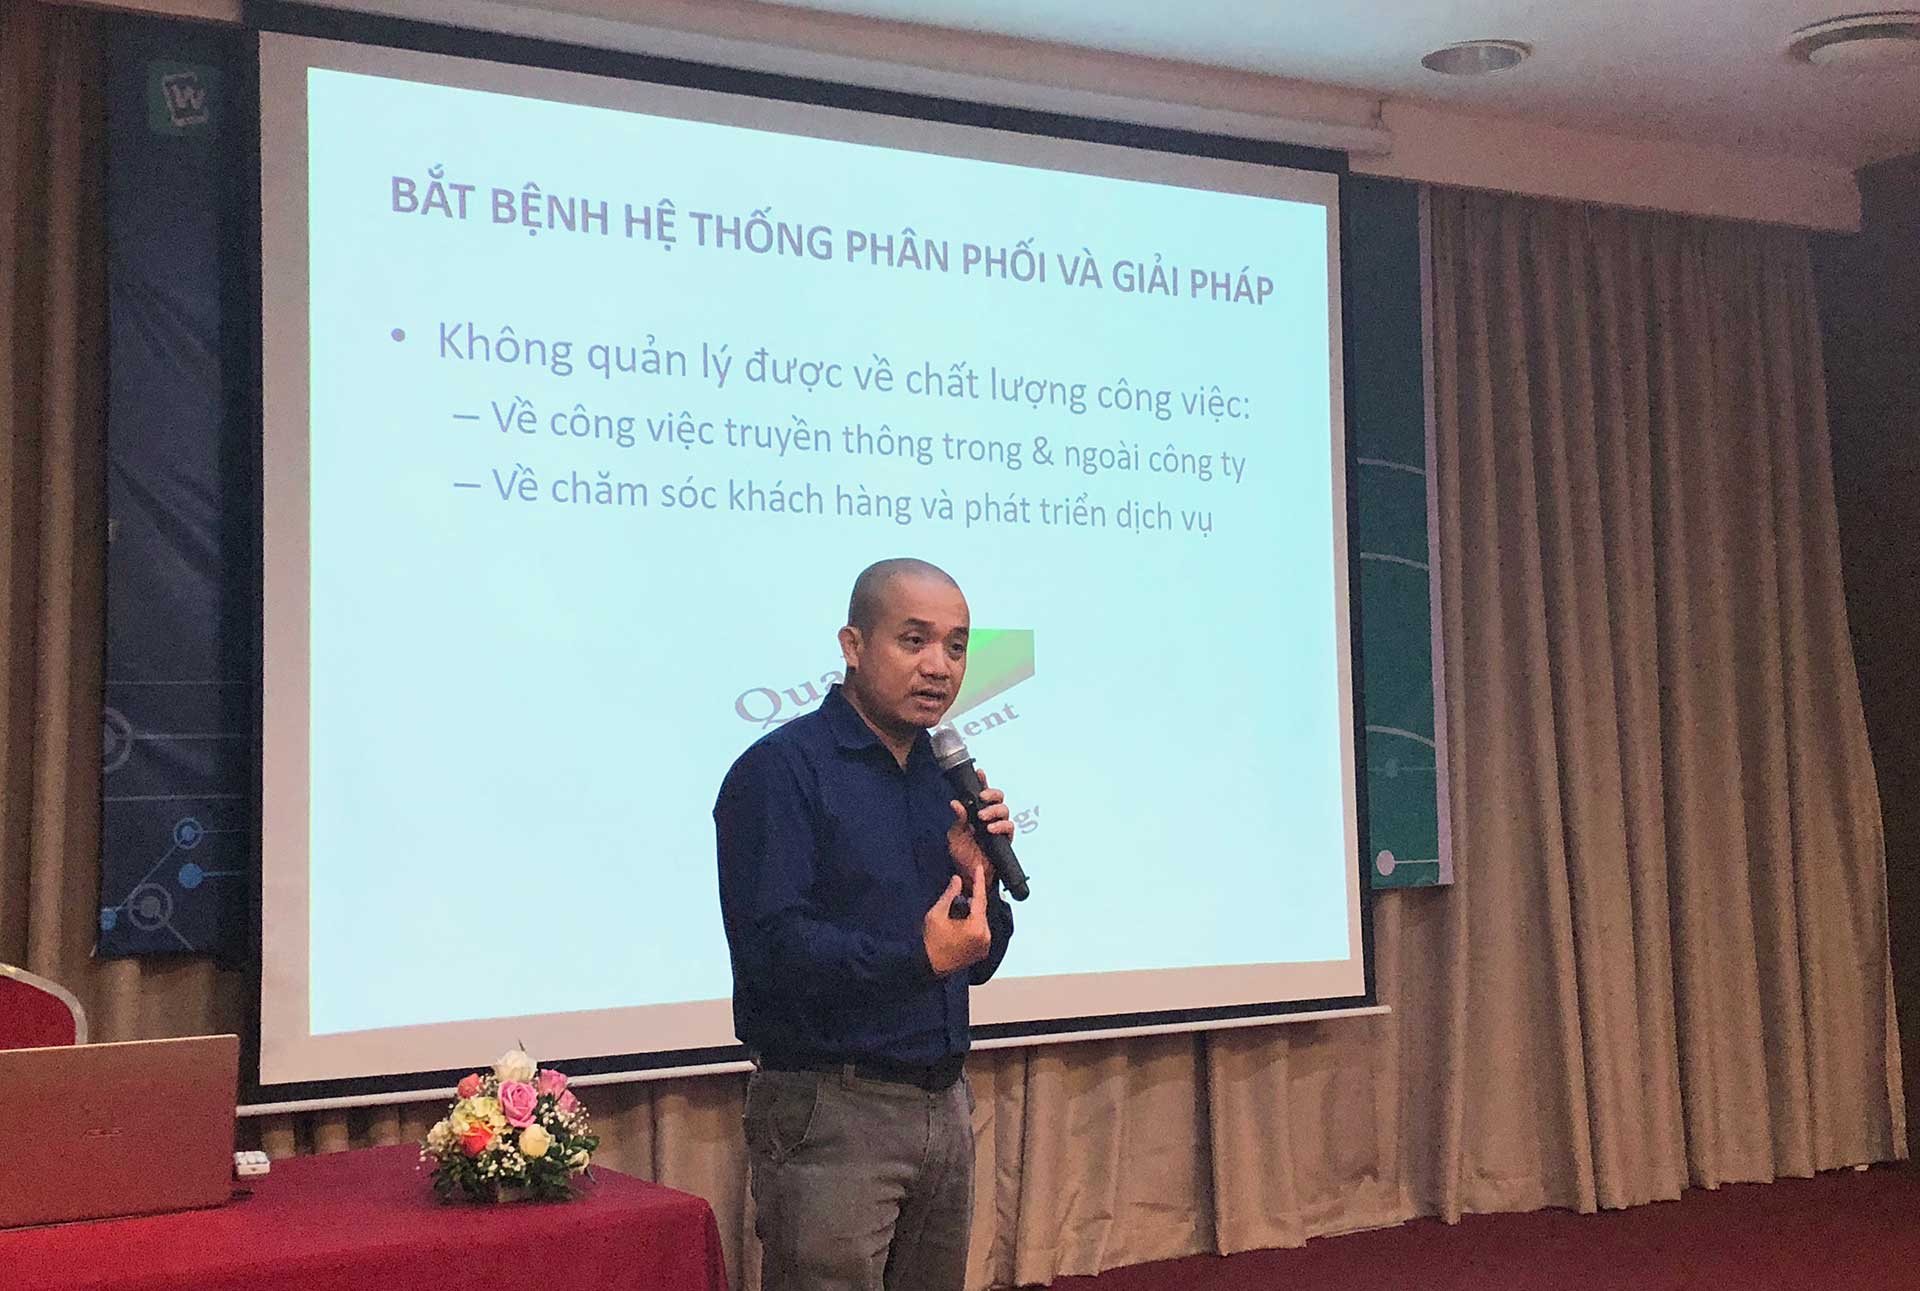 Tổng kết chuỗi hội thảo “Từ THẤU HIỂU đến TỐI ƯU hệ thống phân phối. Ứng dụng công nghệ True Cloud DMS” tại Hà Nội và Hồ Chí Minh